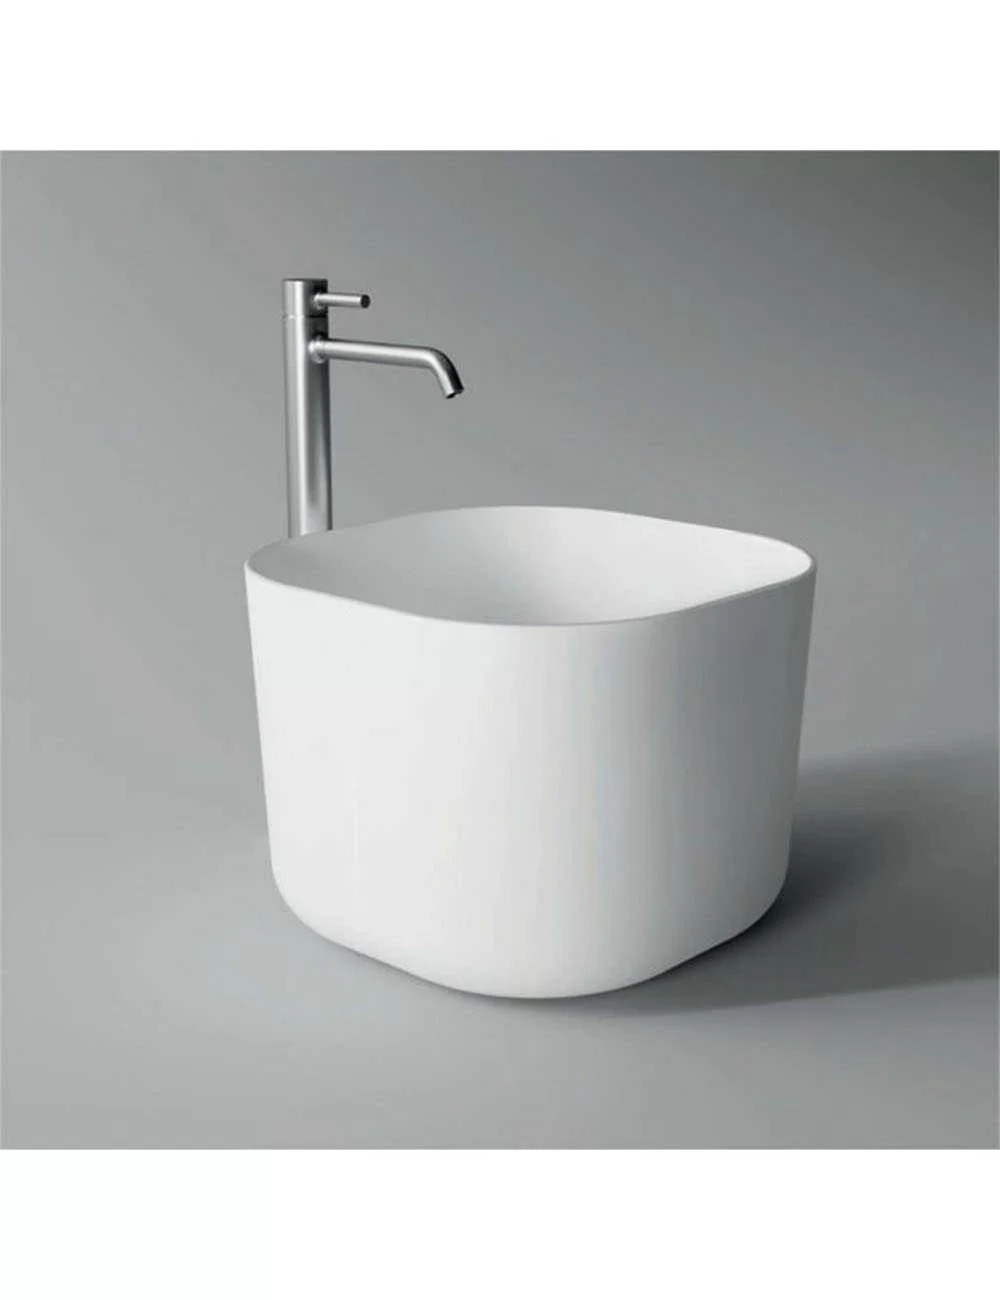 White countertop washbasin square high edge Unica Alice Ceramica